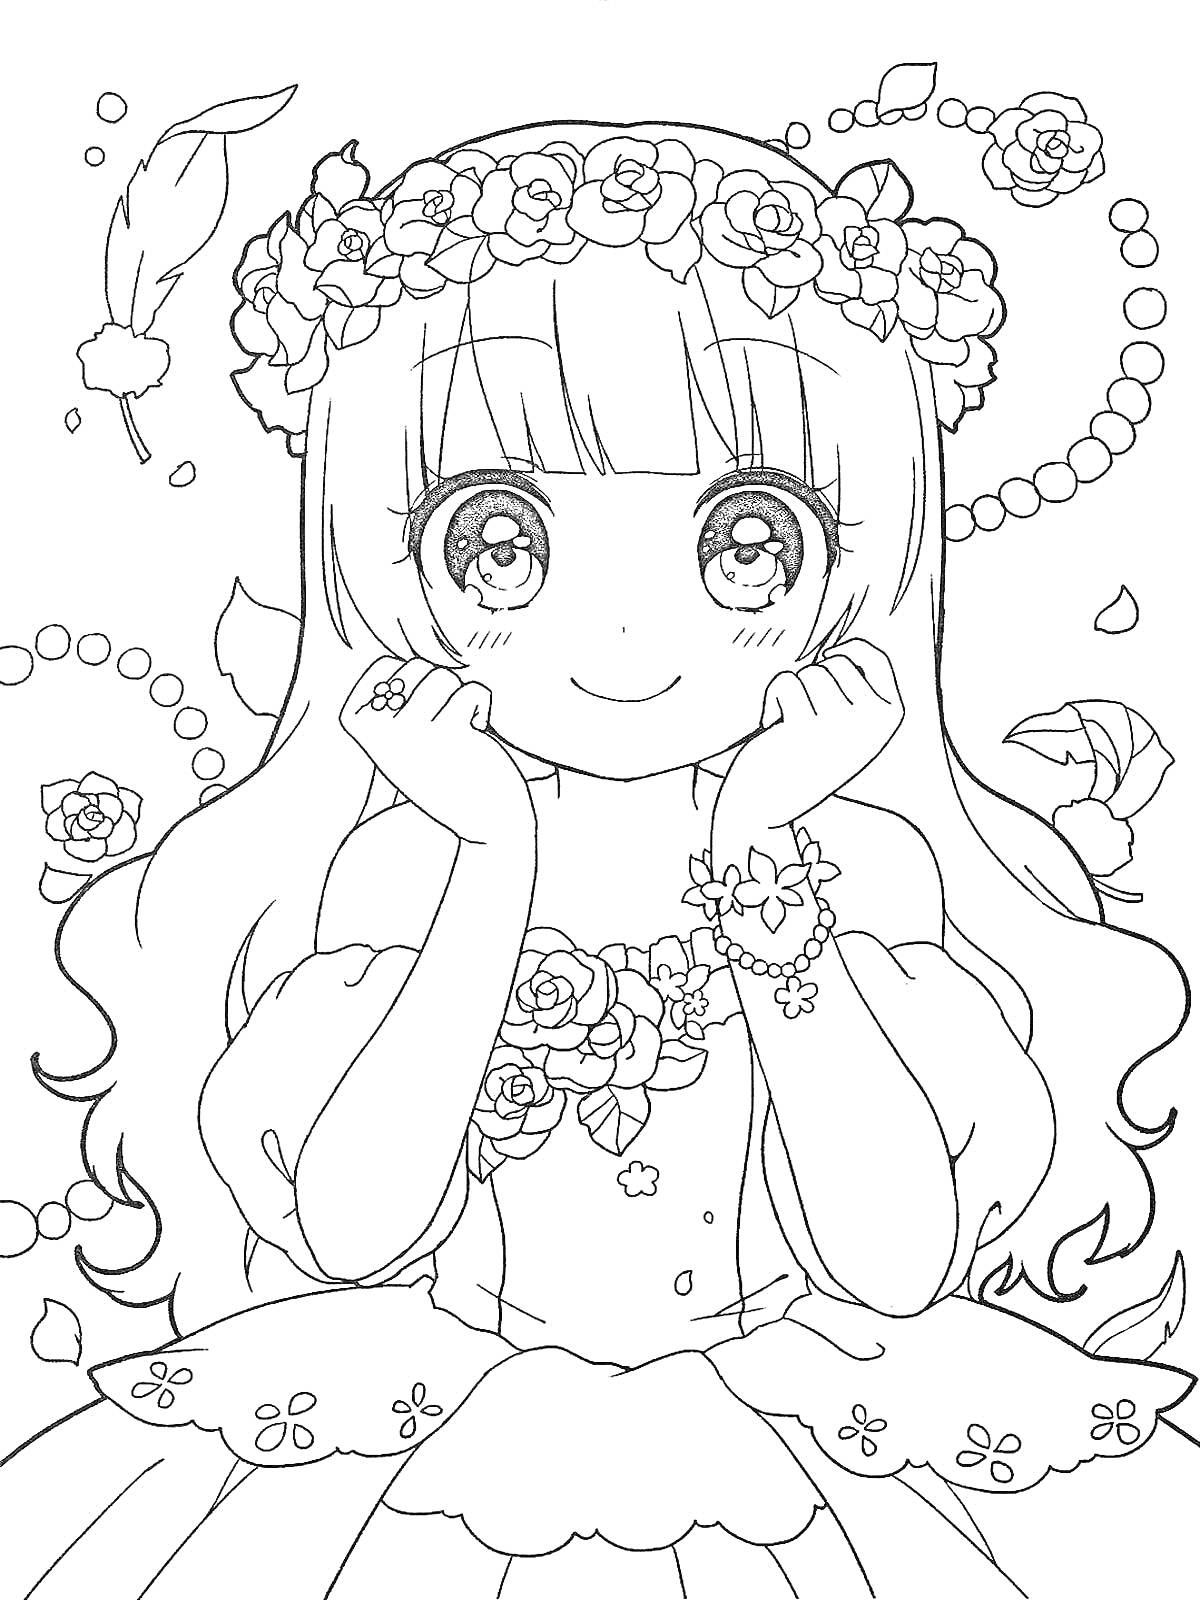 Раскраска Девочка в цветочном венке с ожерельем из бусин, браслетами и цветочной гирляндой